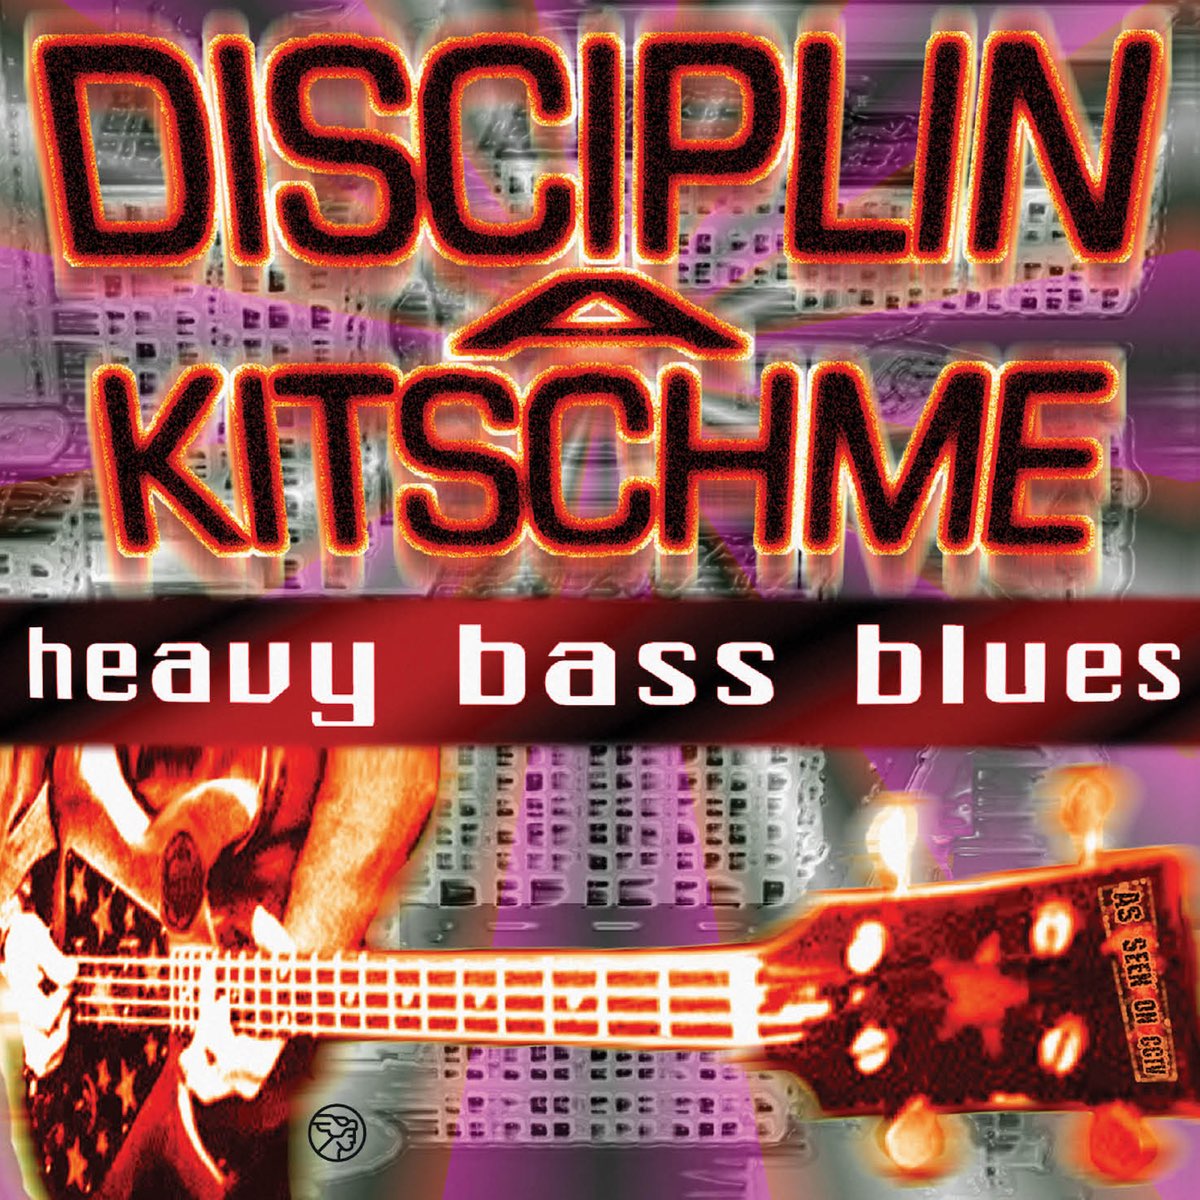 Bass blues. Disciplin a Kitschme. Shocking Blue CD. CDS.